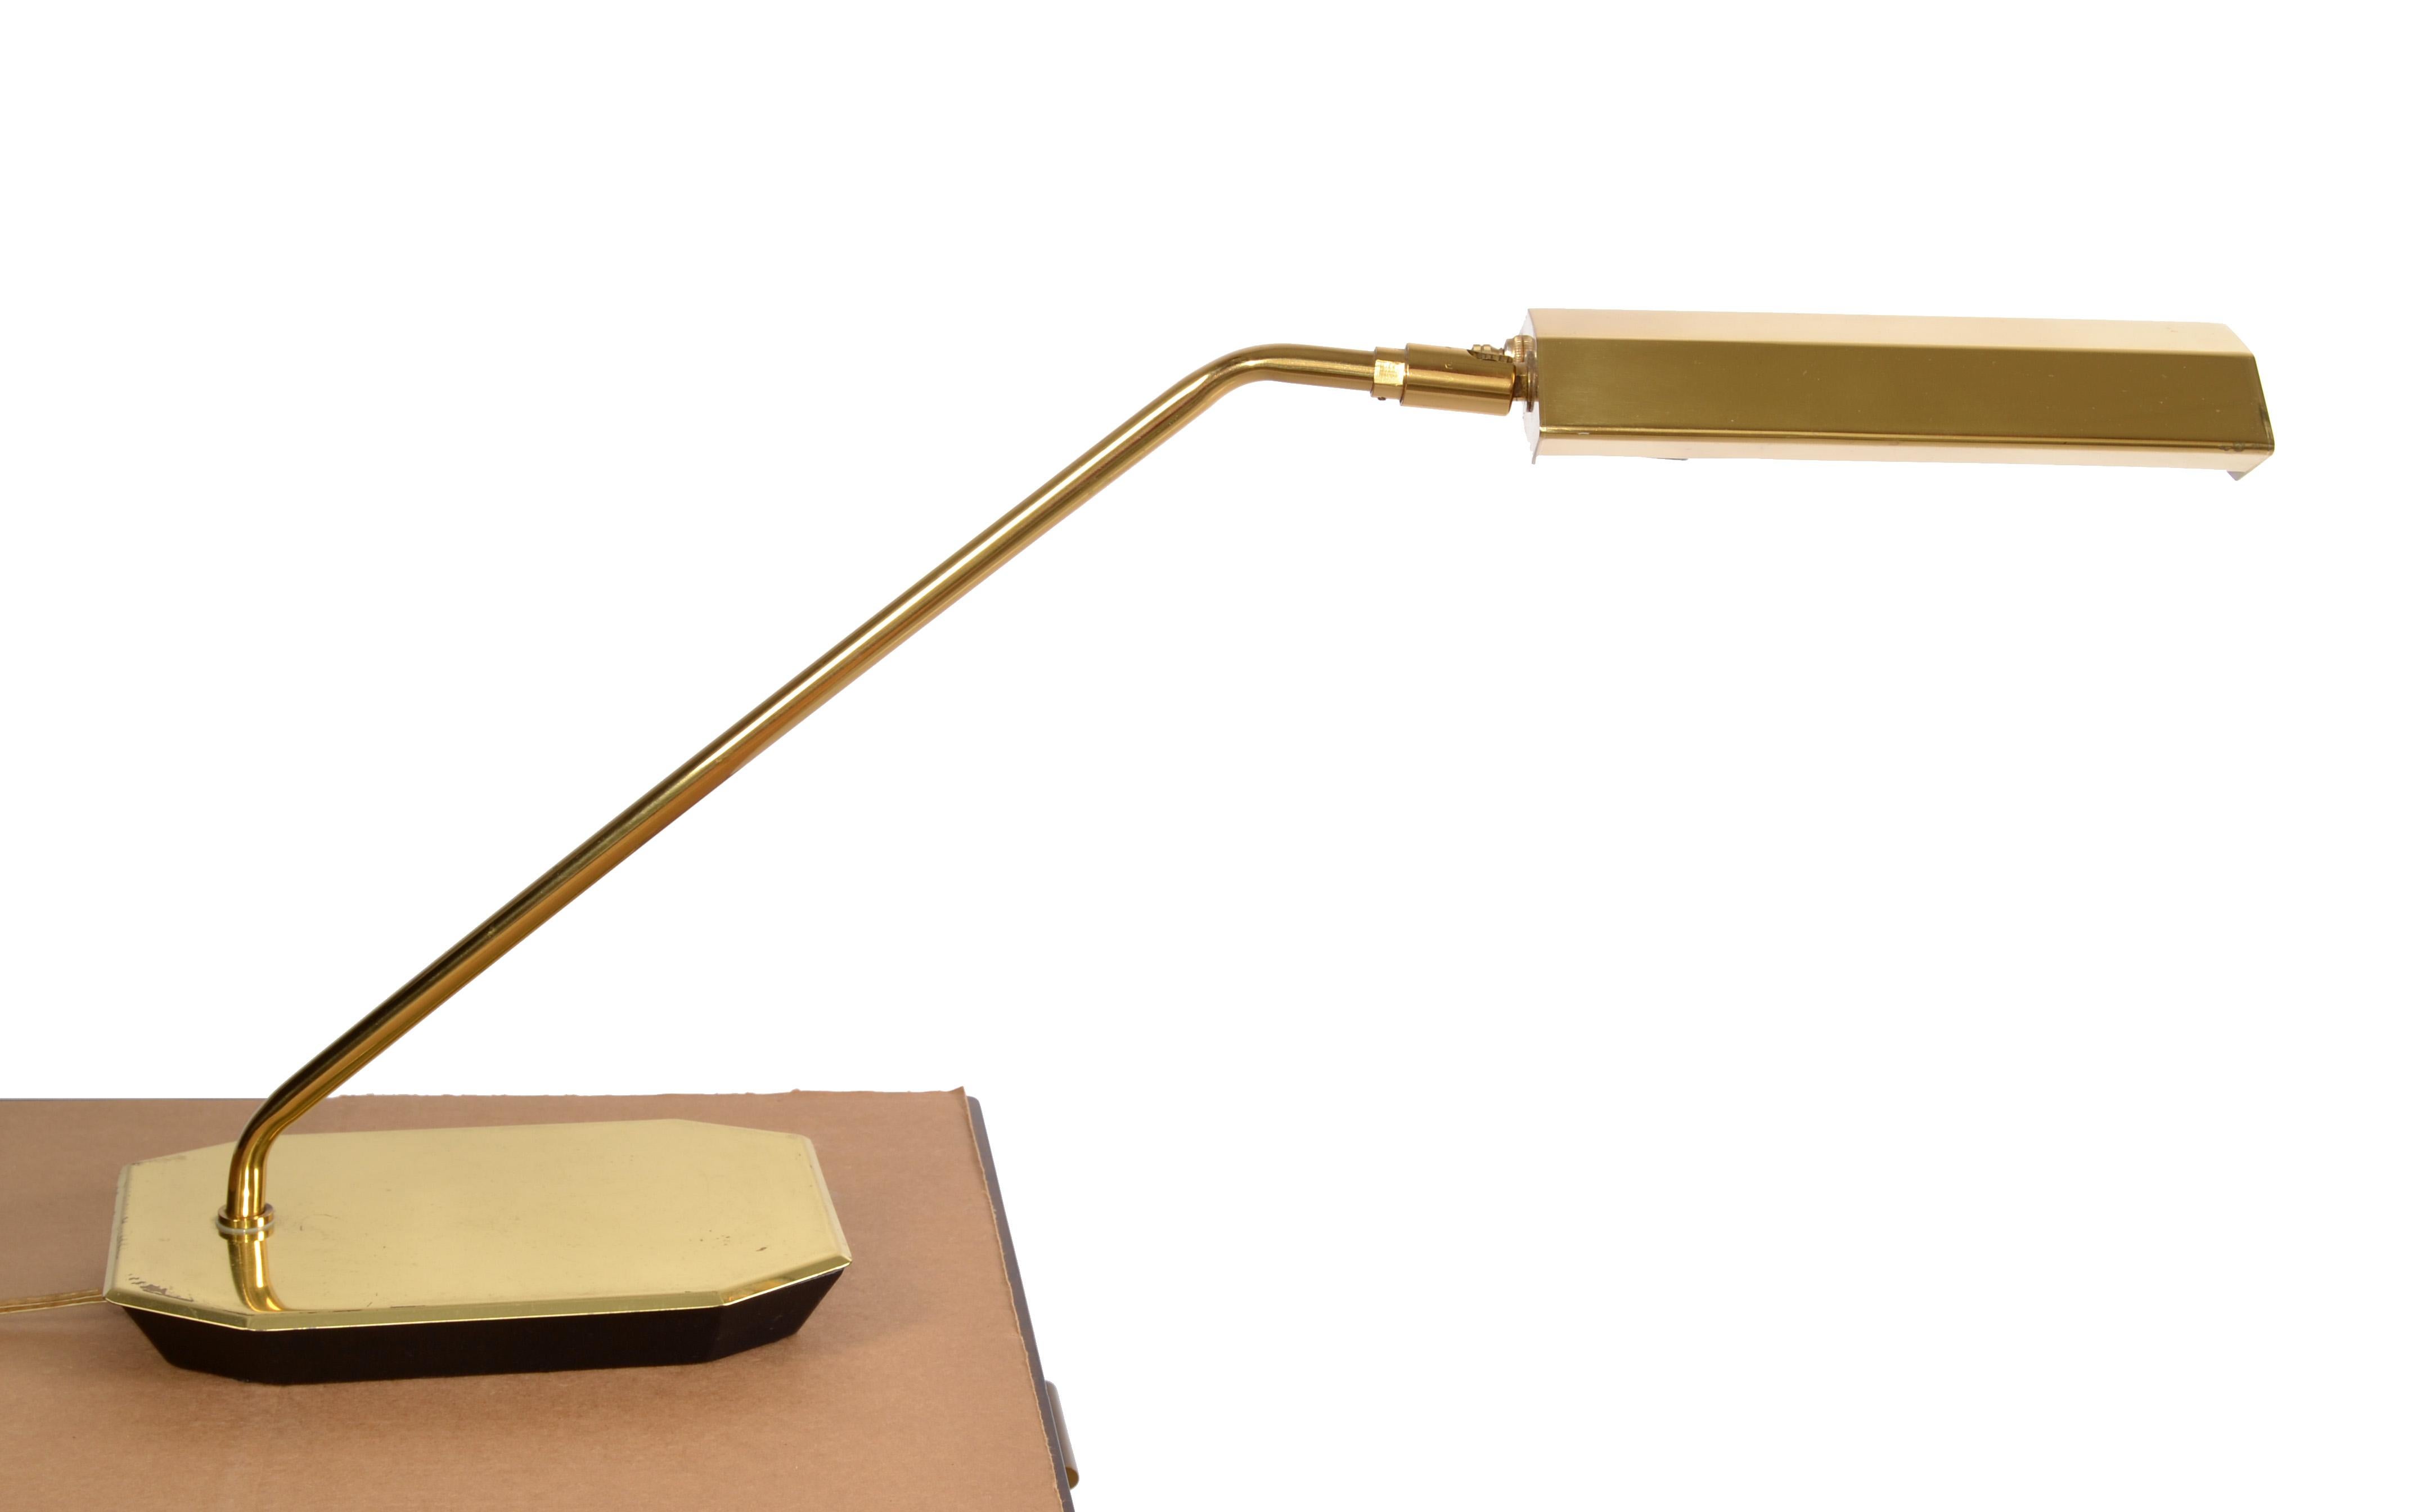 Diese Swing Brass Desk Lamp wurde von Koch & Lowy hergestellt, dem angesehenen amerikanischen Unternehmen, das alle Arten von Beleuchtungen entwarf, von Tisch- und Stehlampen bis hin zu Kronleuchtern.  
Es ist am besten bekannt und anerkannt durch